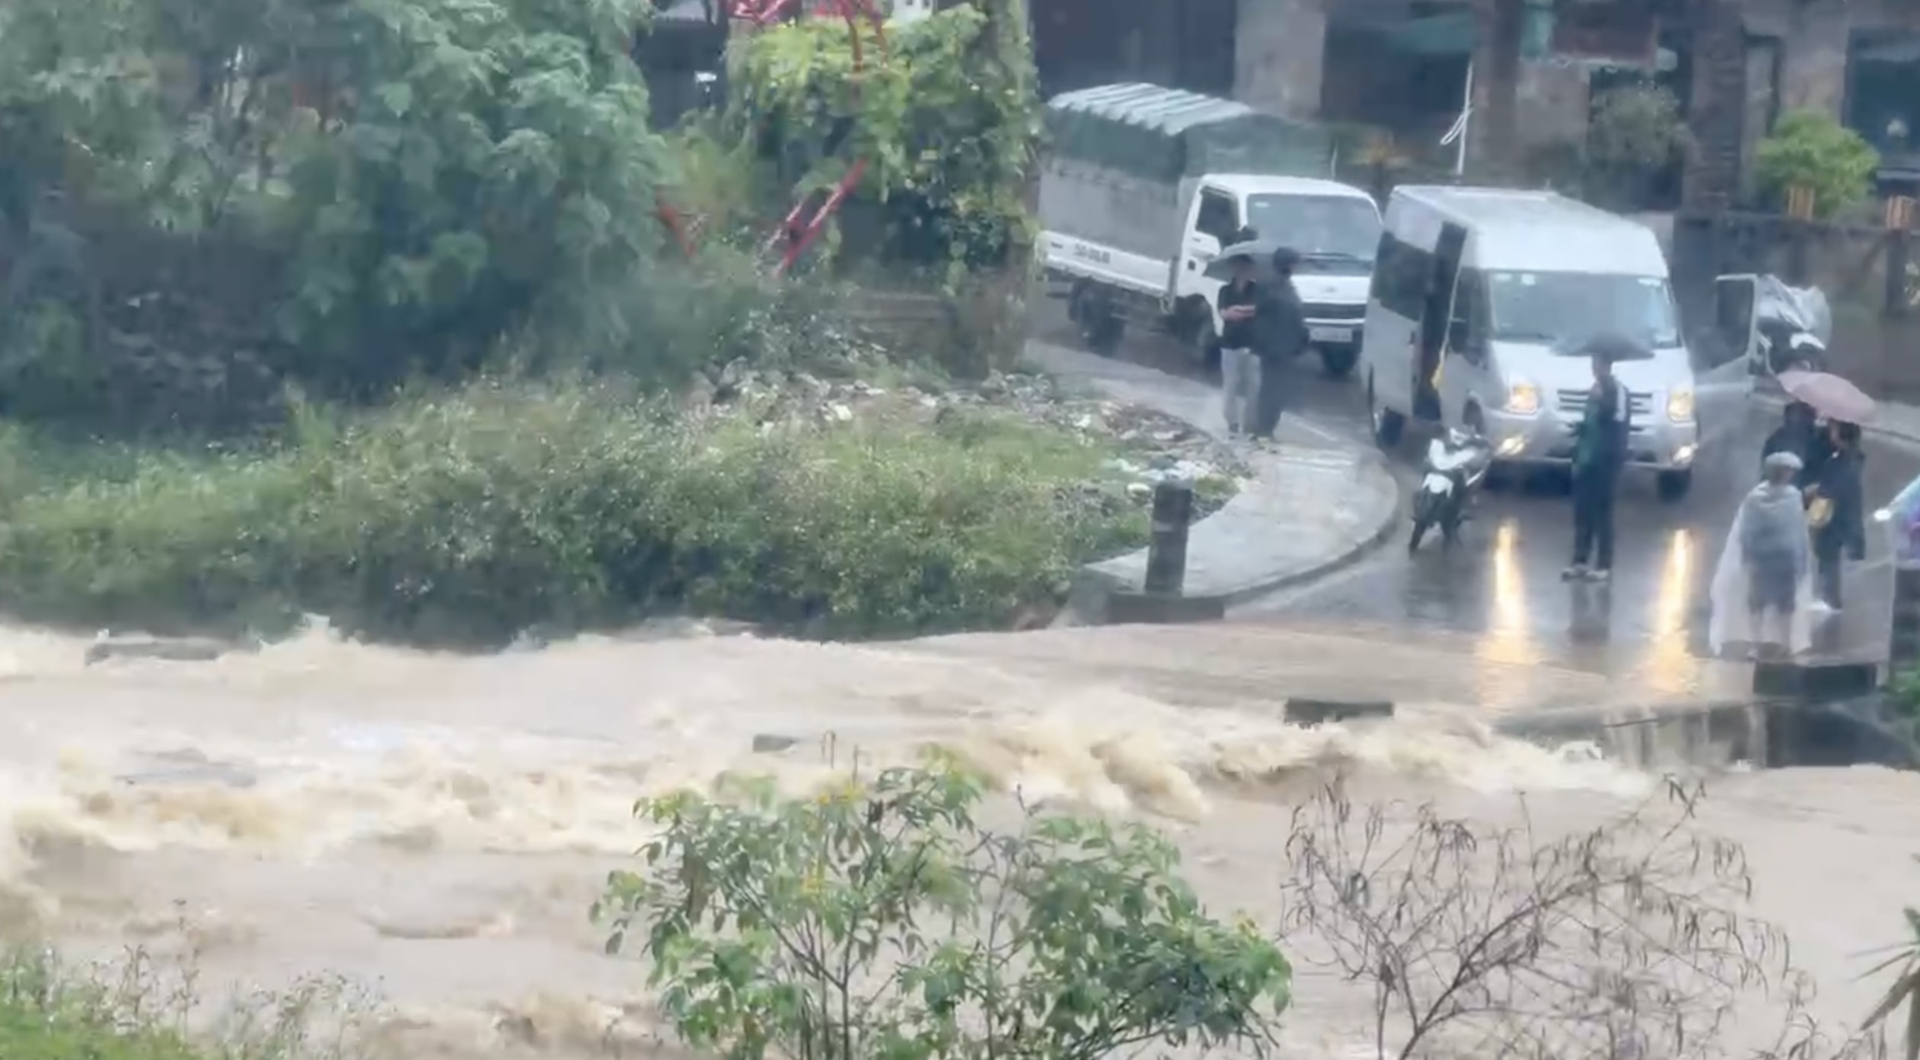 Đập tràn ở Tả Van (Sa Pa), nước chảy xiết khiến nhiều phương tiện chưa thể đi qua. Tả Van cũng là nơi du khách thường ghé qua, nơi này cũng tập trung nhiều homestay của người dân địa phương.